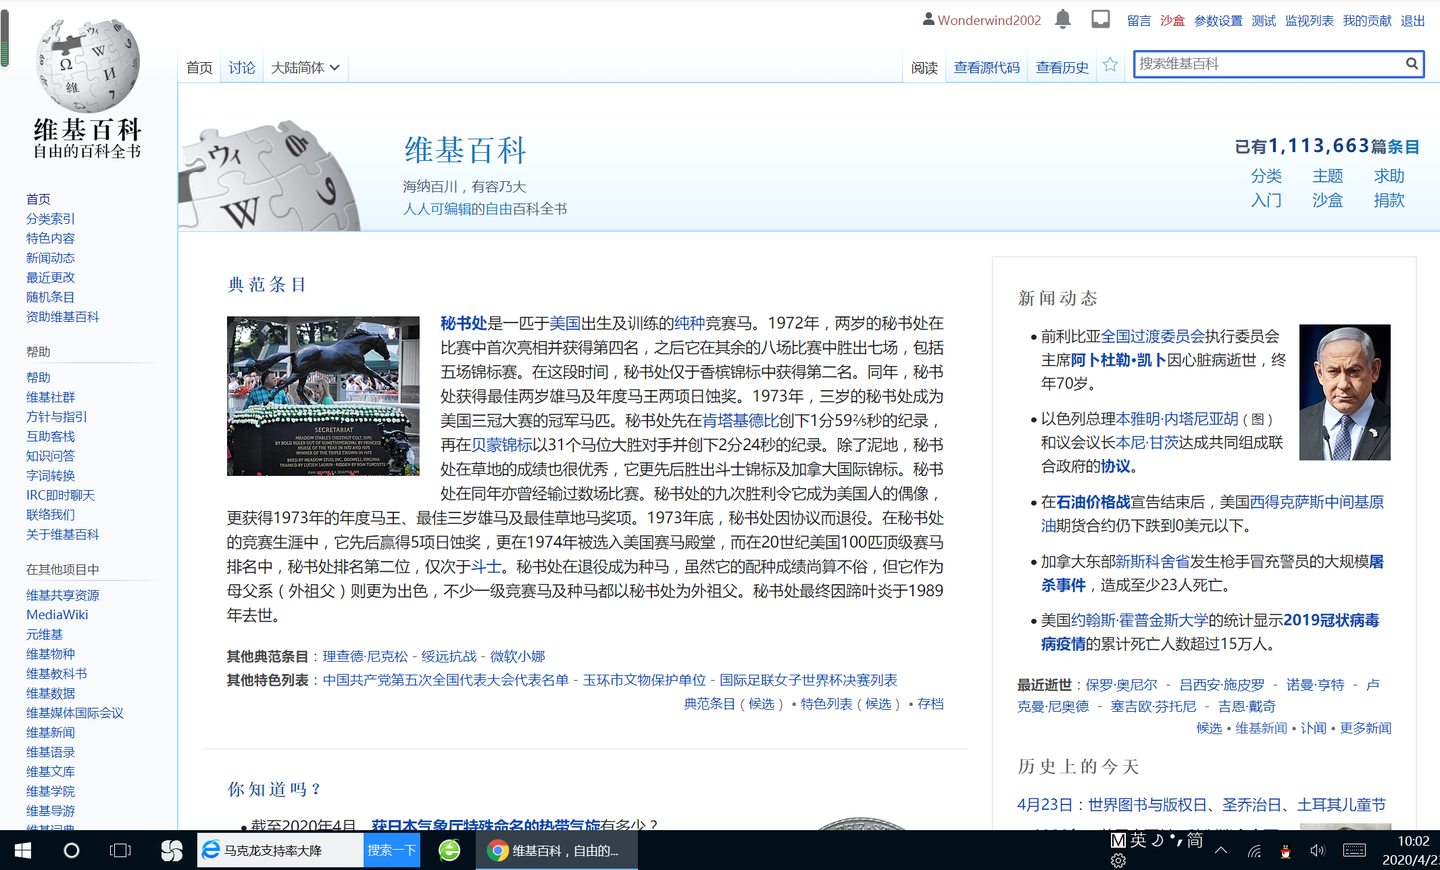 我的世界中文维基百科_维基百科 中文 英文_维基百科中文网站